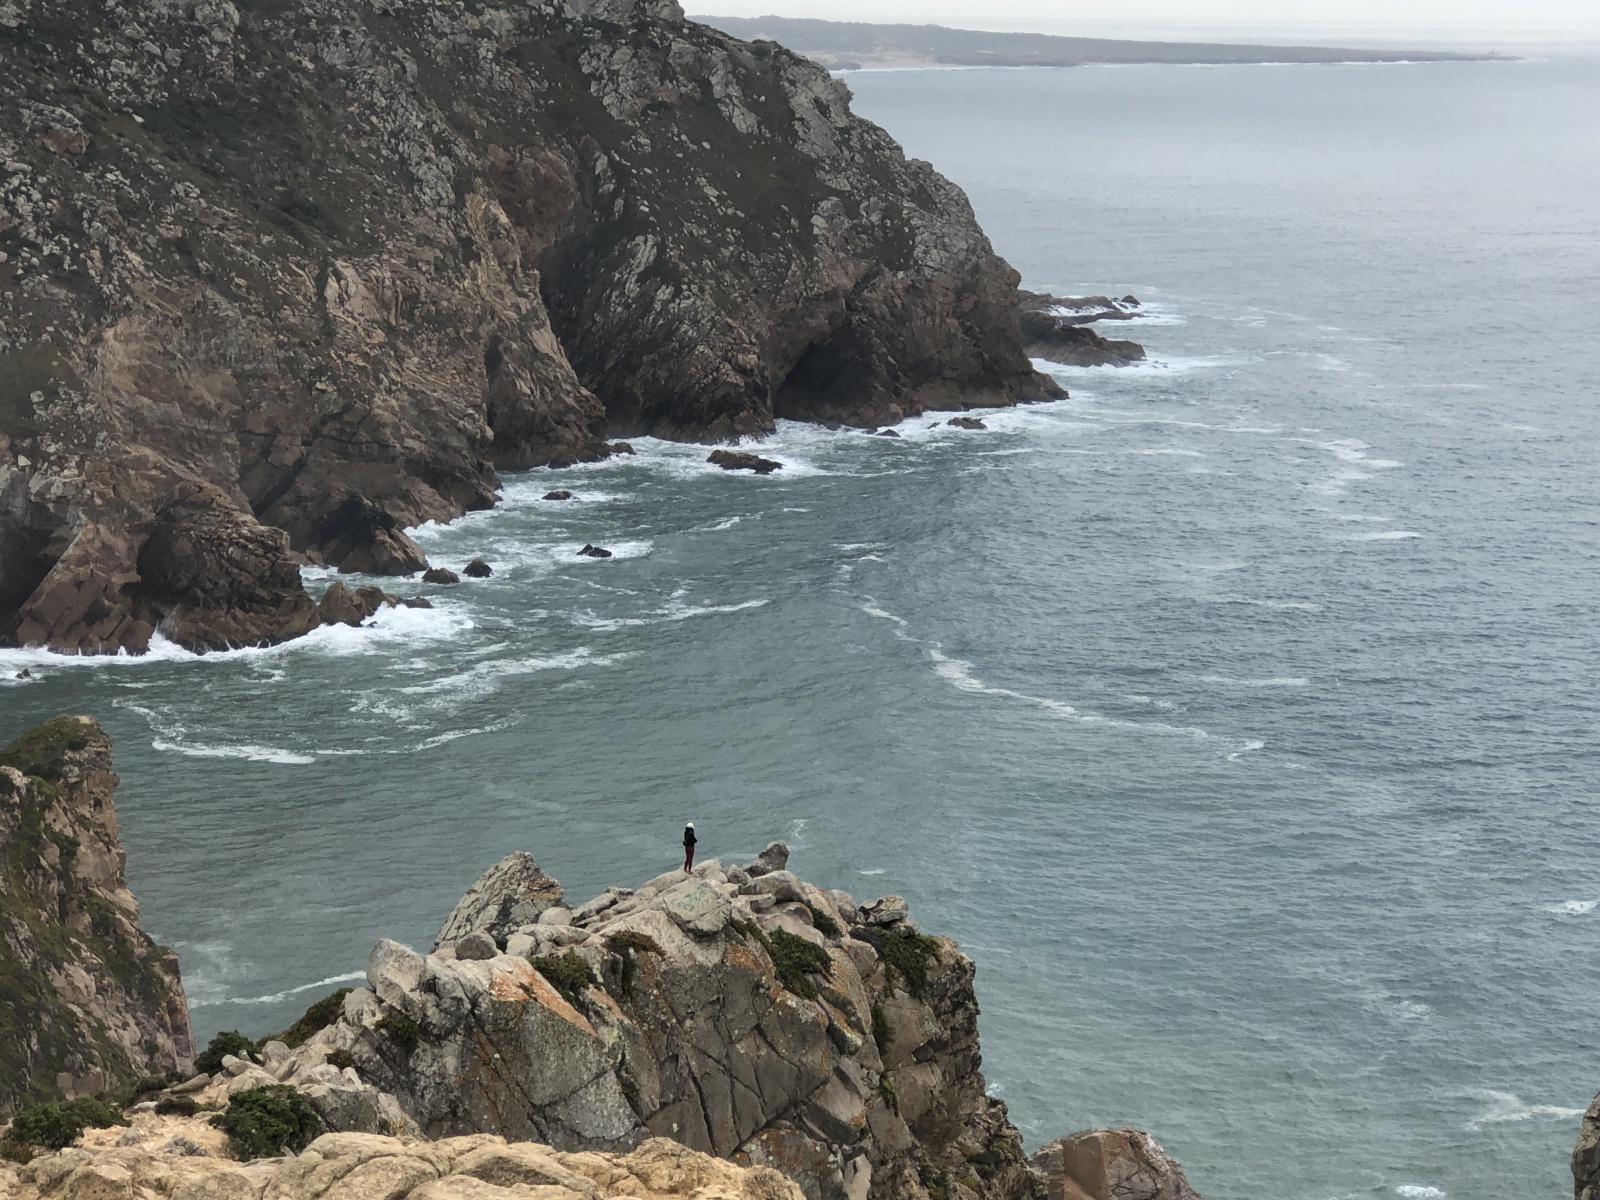 Мыс Рока, самая западная точка Европы, Португалия. Фото из личного архива автора